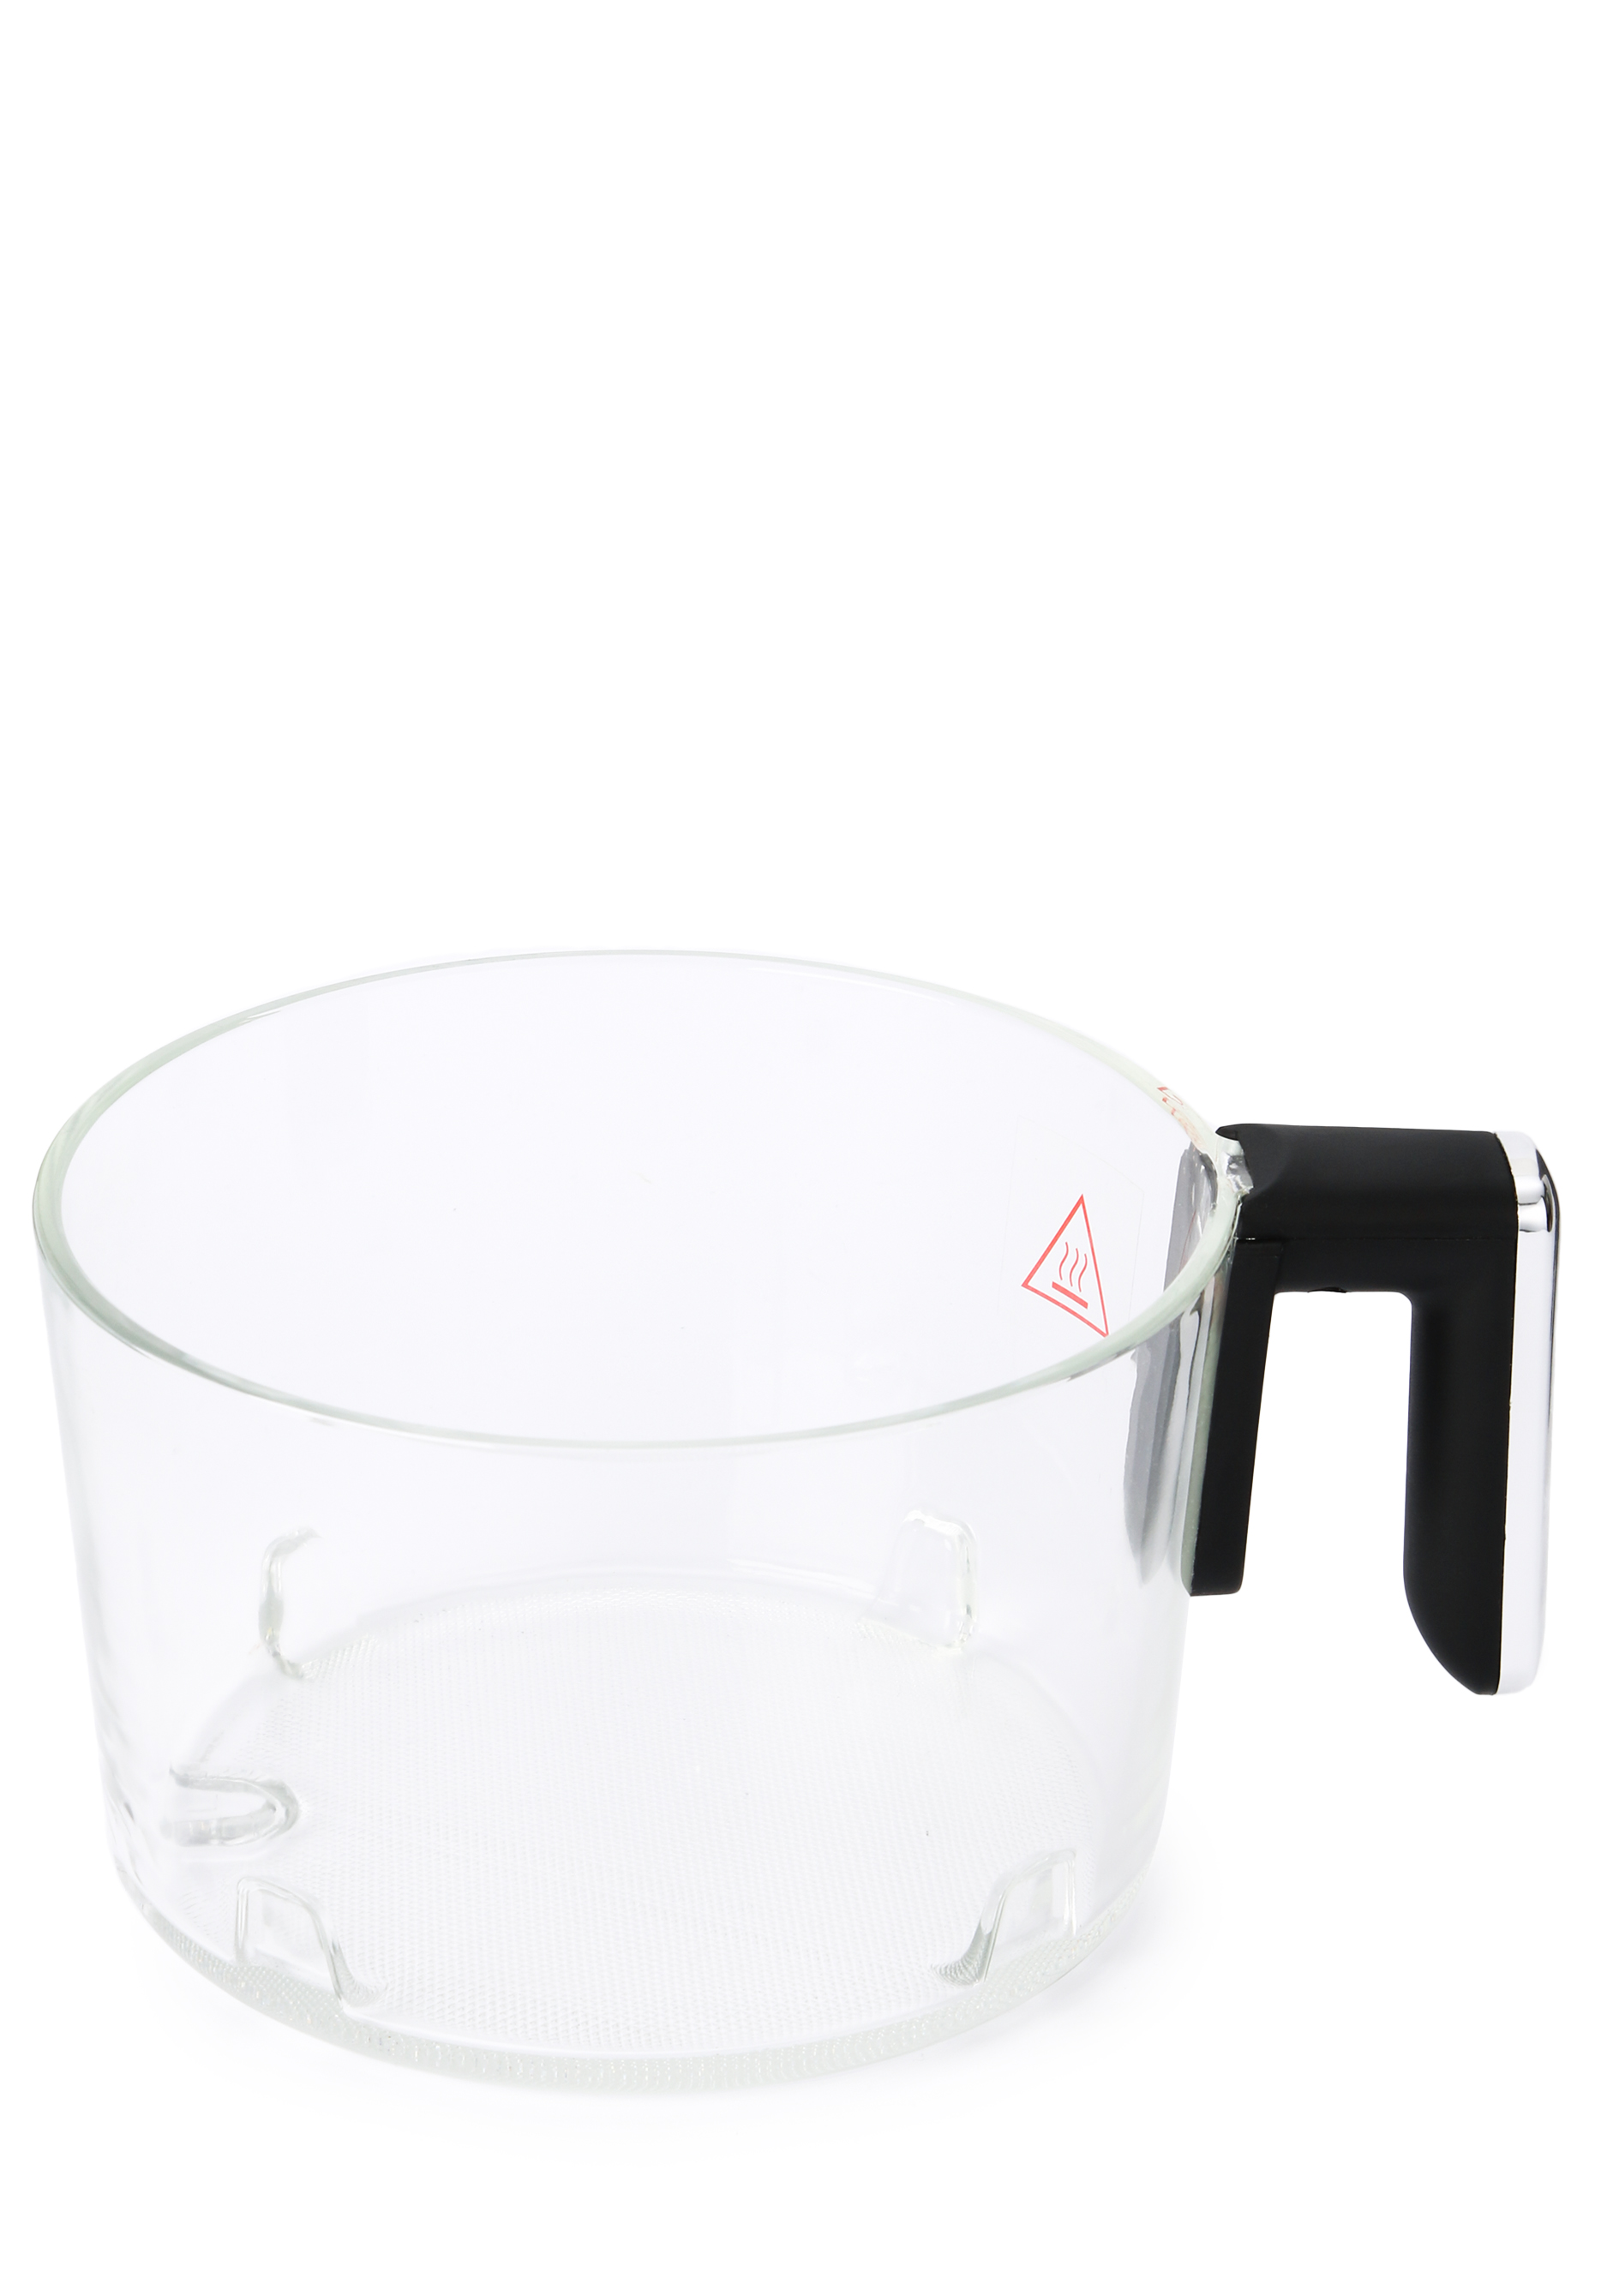 Аэрогриль с чашей из стекла JVC, цвет черный - фото 7